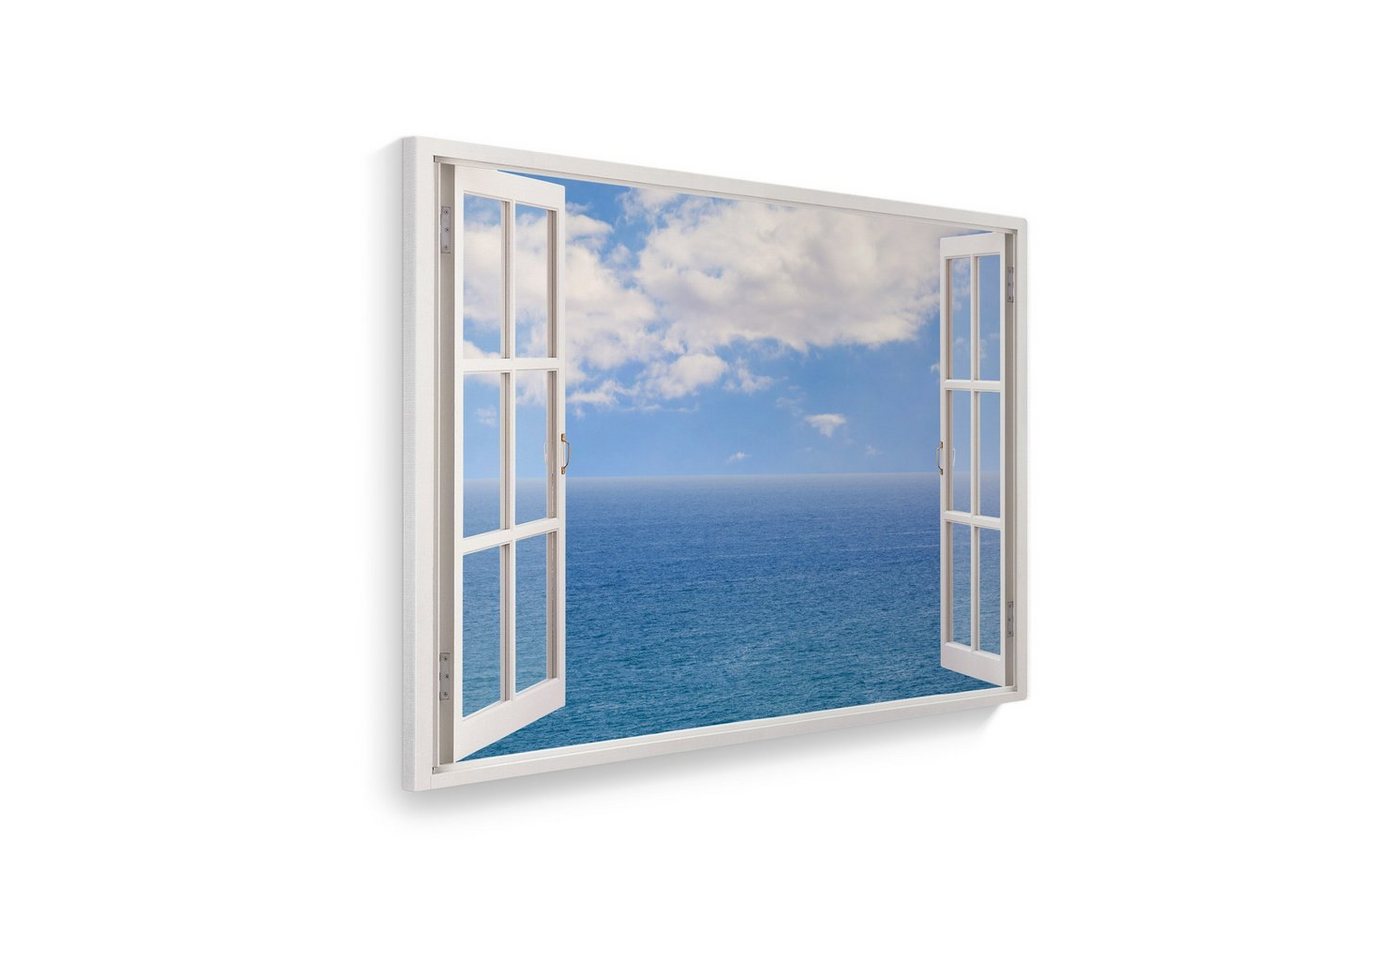 WallSpirit Leinwandbild Fenster mit Aussicht", Meer mit Wolken, Leinwandbild geeignet für alle Wohnbereiche" von WallSpirit